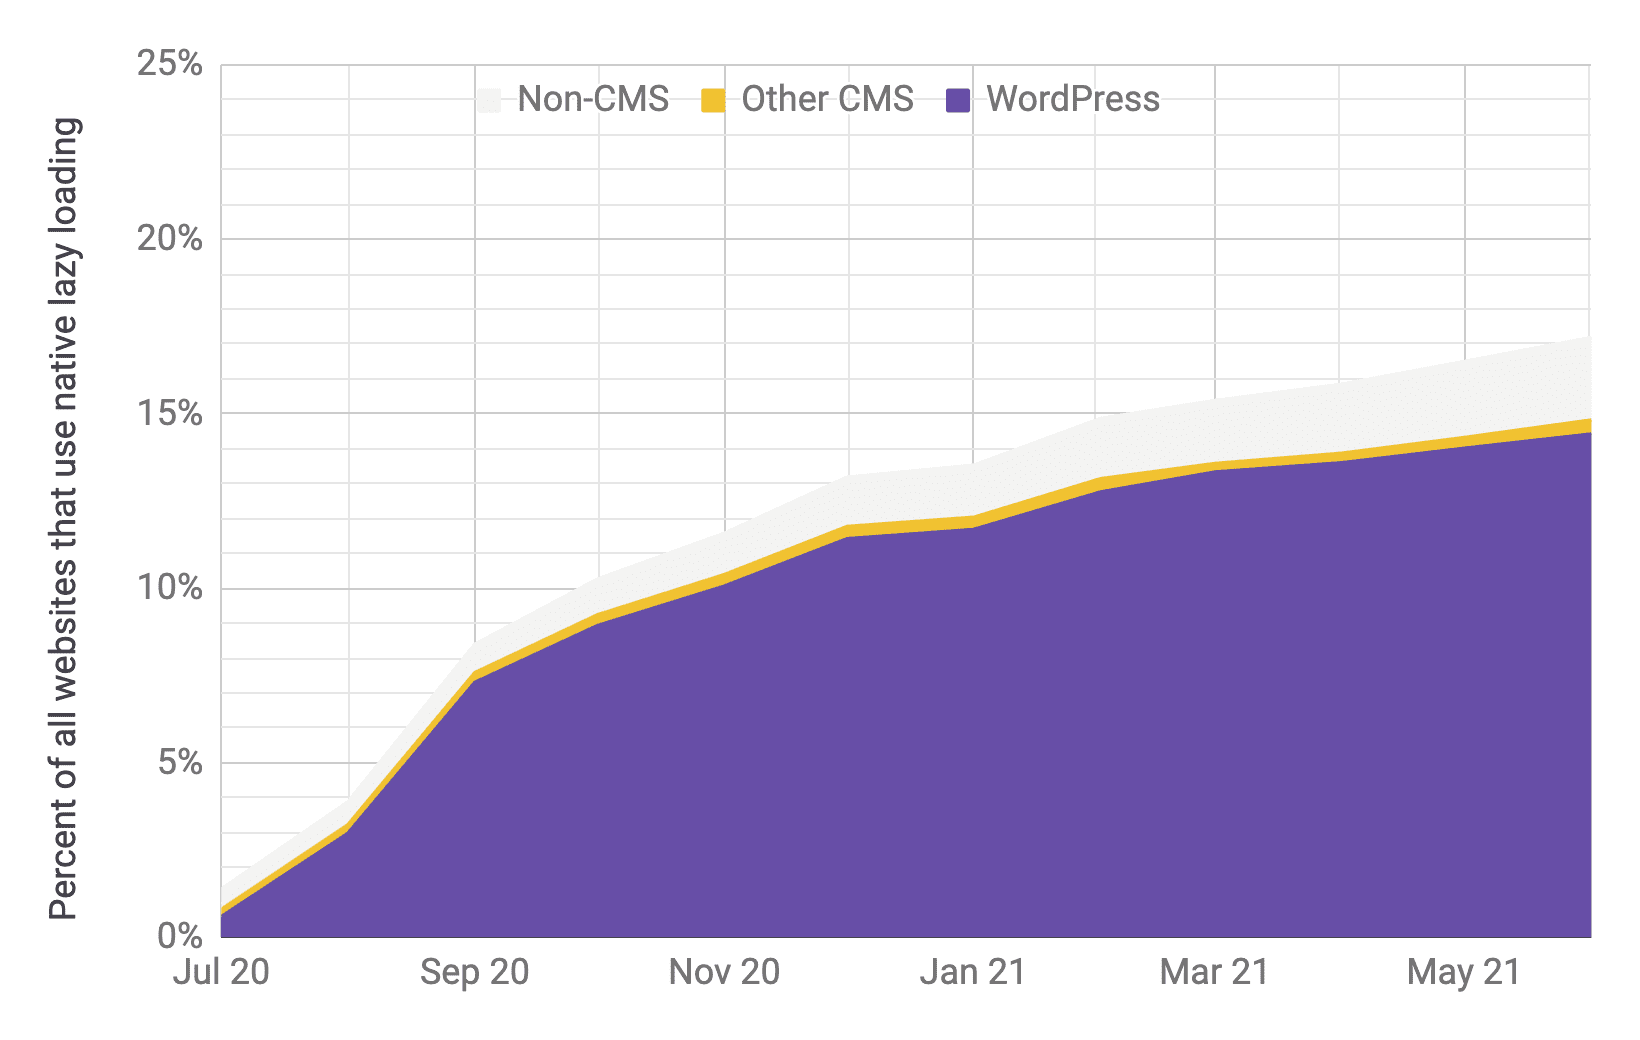 Gráfico de serie temporal de adopción de carga diferida en el que WordPress es el predominante en comparación con otros CMS y no CMS, con proporciones similares a las del gráfico anterior. Se muestra que la adopción total aumentó rápidamente del 1 al 17% entre julio de 2020 y junio de 2021.